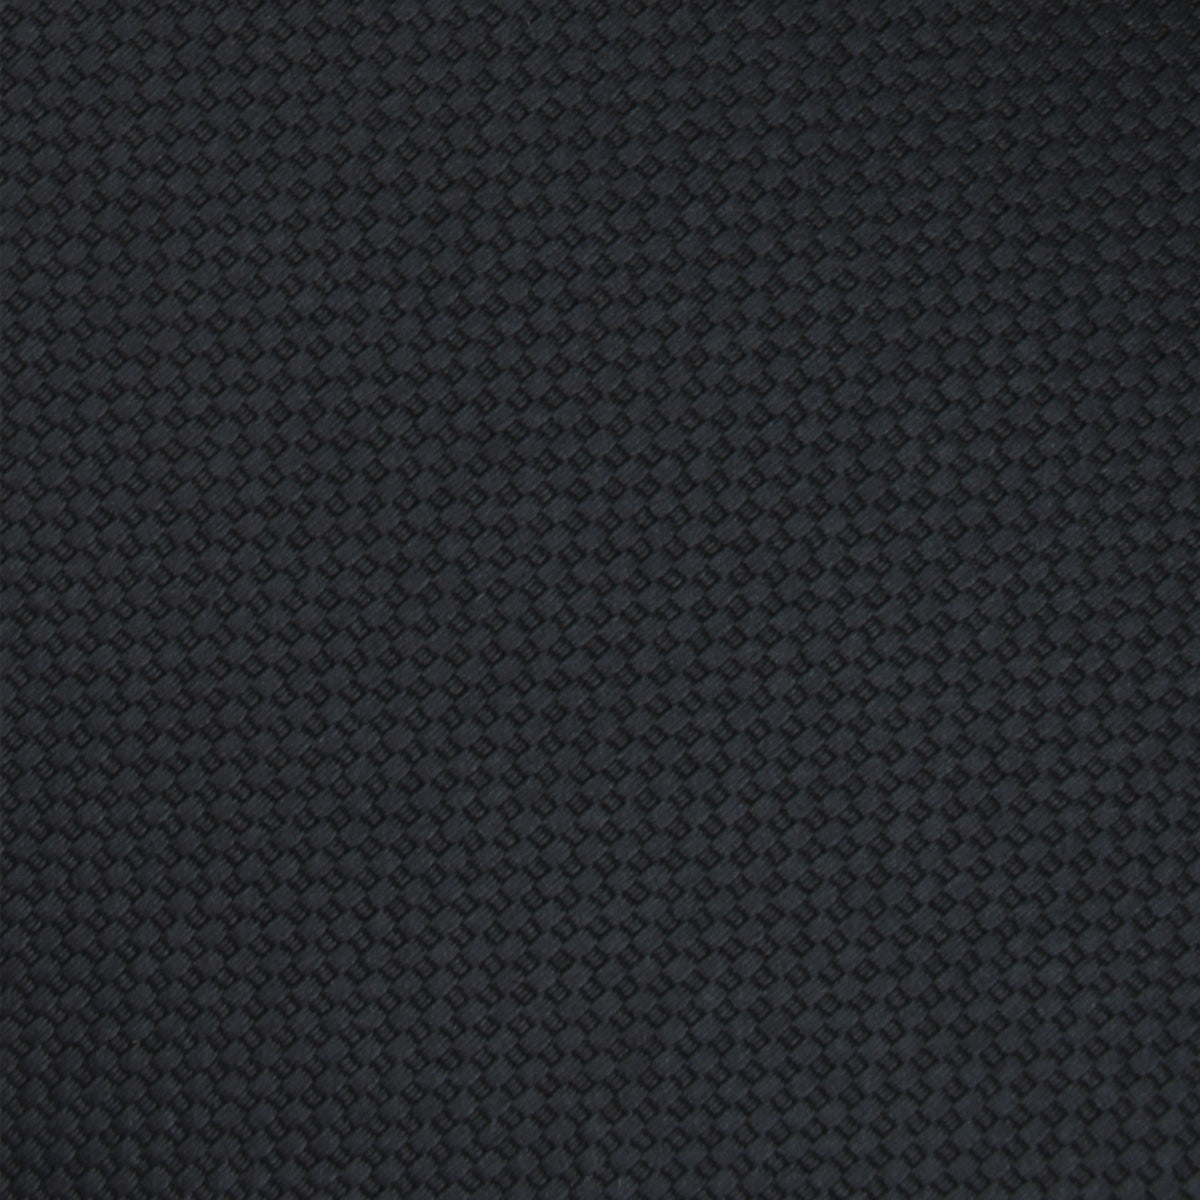 Black Basket Weave Skinny Tie Fabric